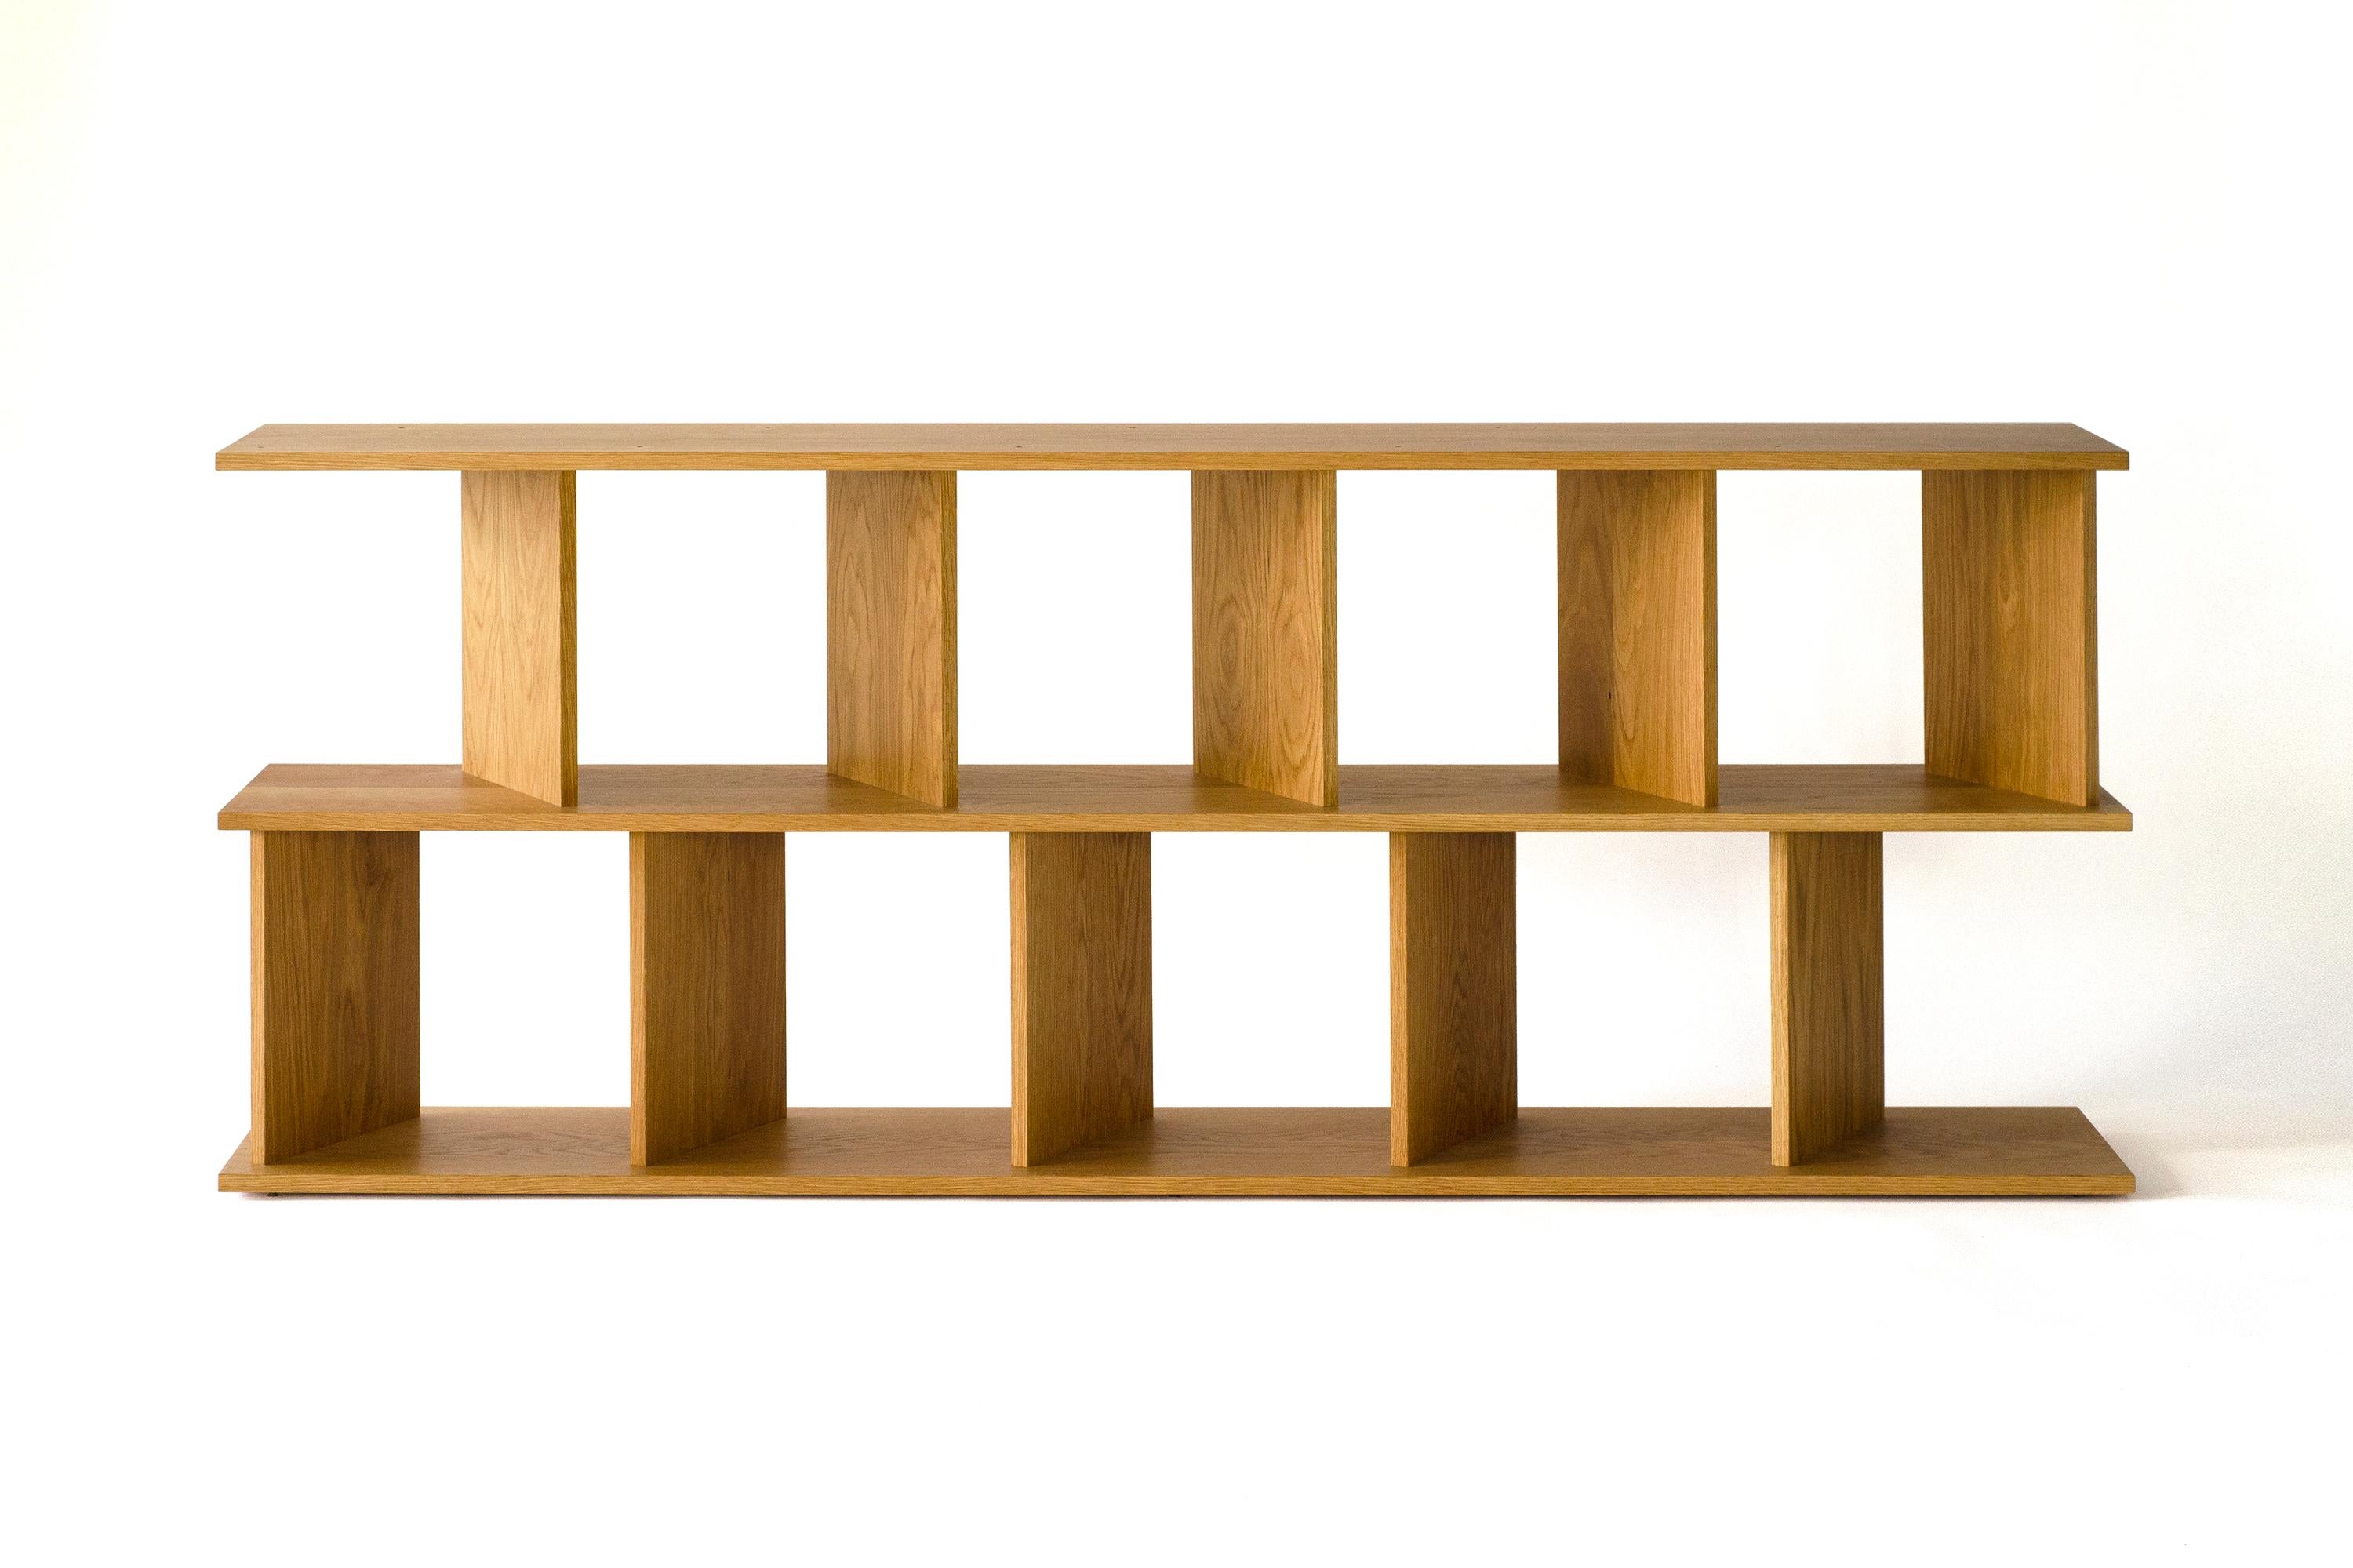 Teil Raumteiler, Teil Bücherregal, Teil Leinwand, Teil Raumteiler – die Serie „30/30“ ist ein äußerst vielseitiges Regalsystem.
30/30 wird für die Grade der abwechselnd abgewinkelten Trennwände benannt, die dem Stück seine einzigartige Struktur und